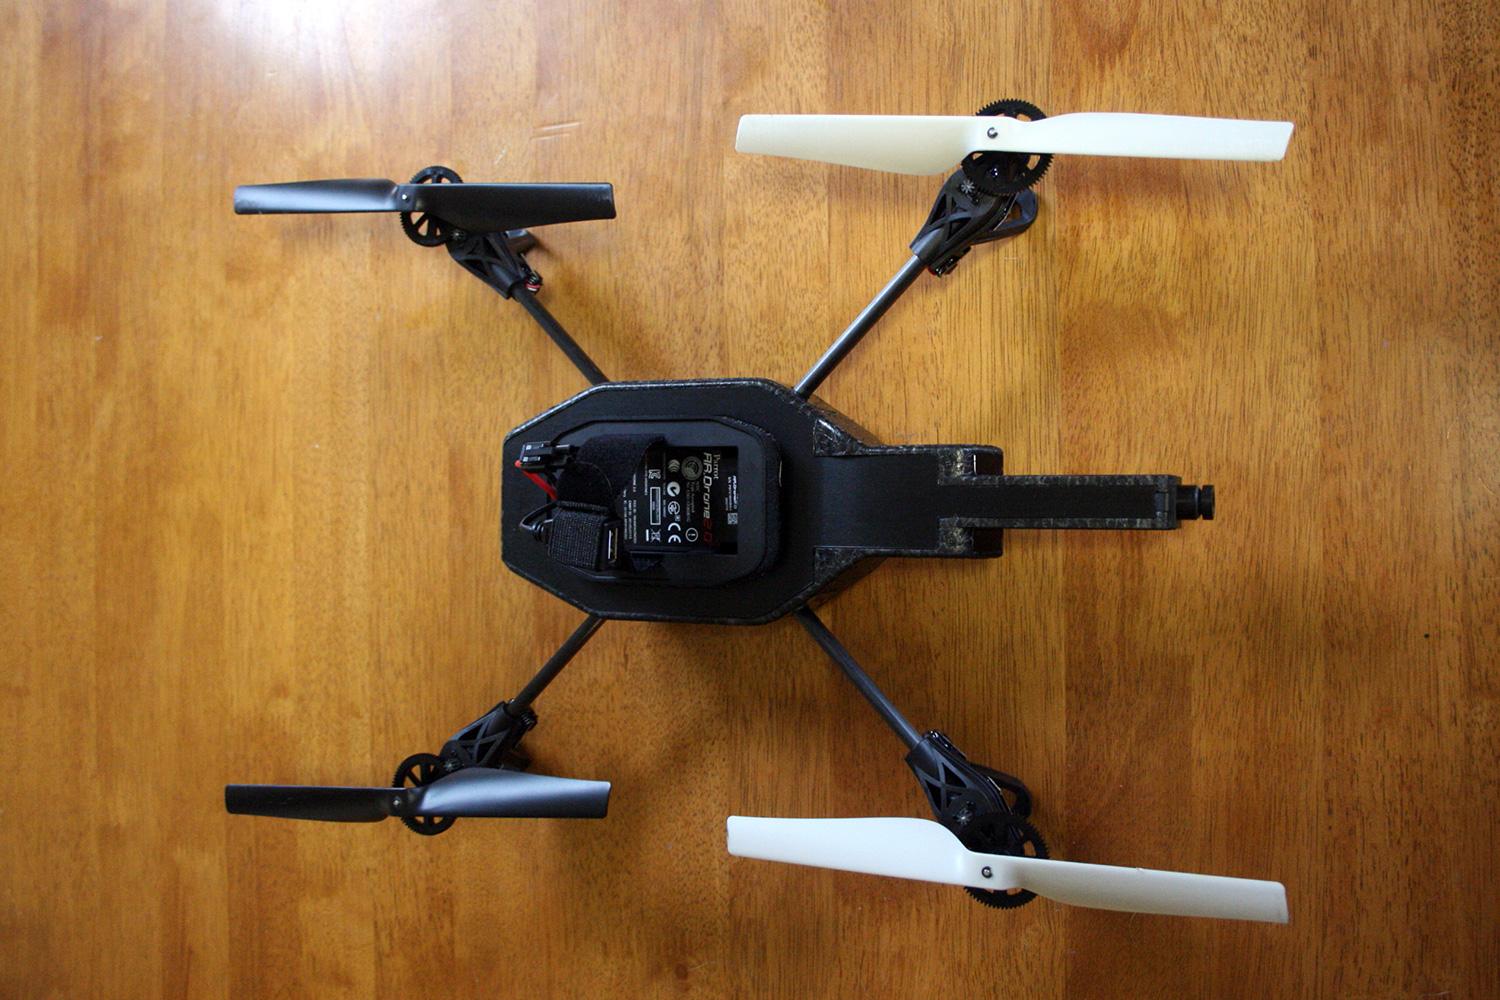 Parrpot AR.Drone 2 base